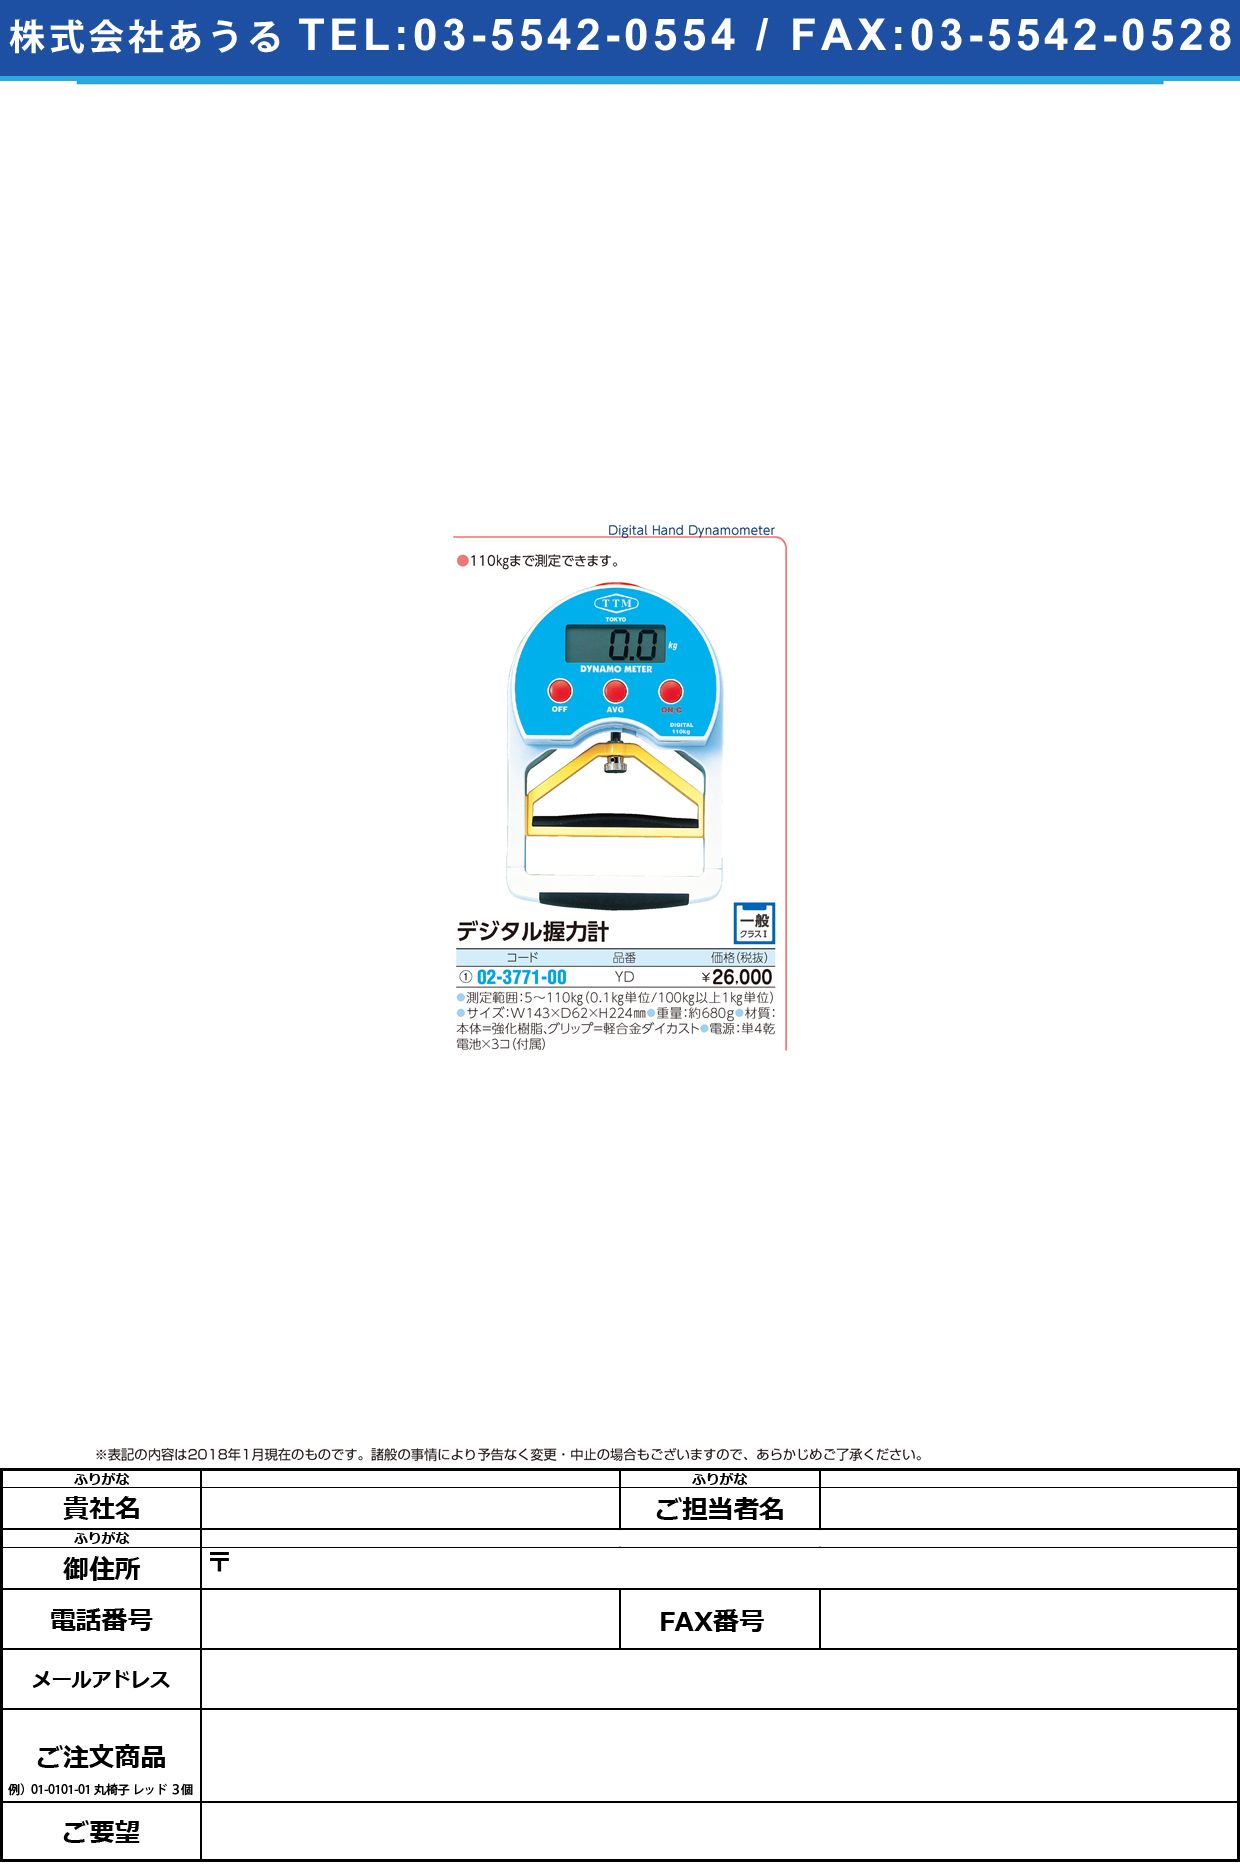 (02-3771-00)デジタル握力計 YD(110KG) ﾃﾞｼﾞﾀﾙｱｸﾘｮｸｹｲ【1台単位】【2018年カタログ商品】